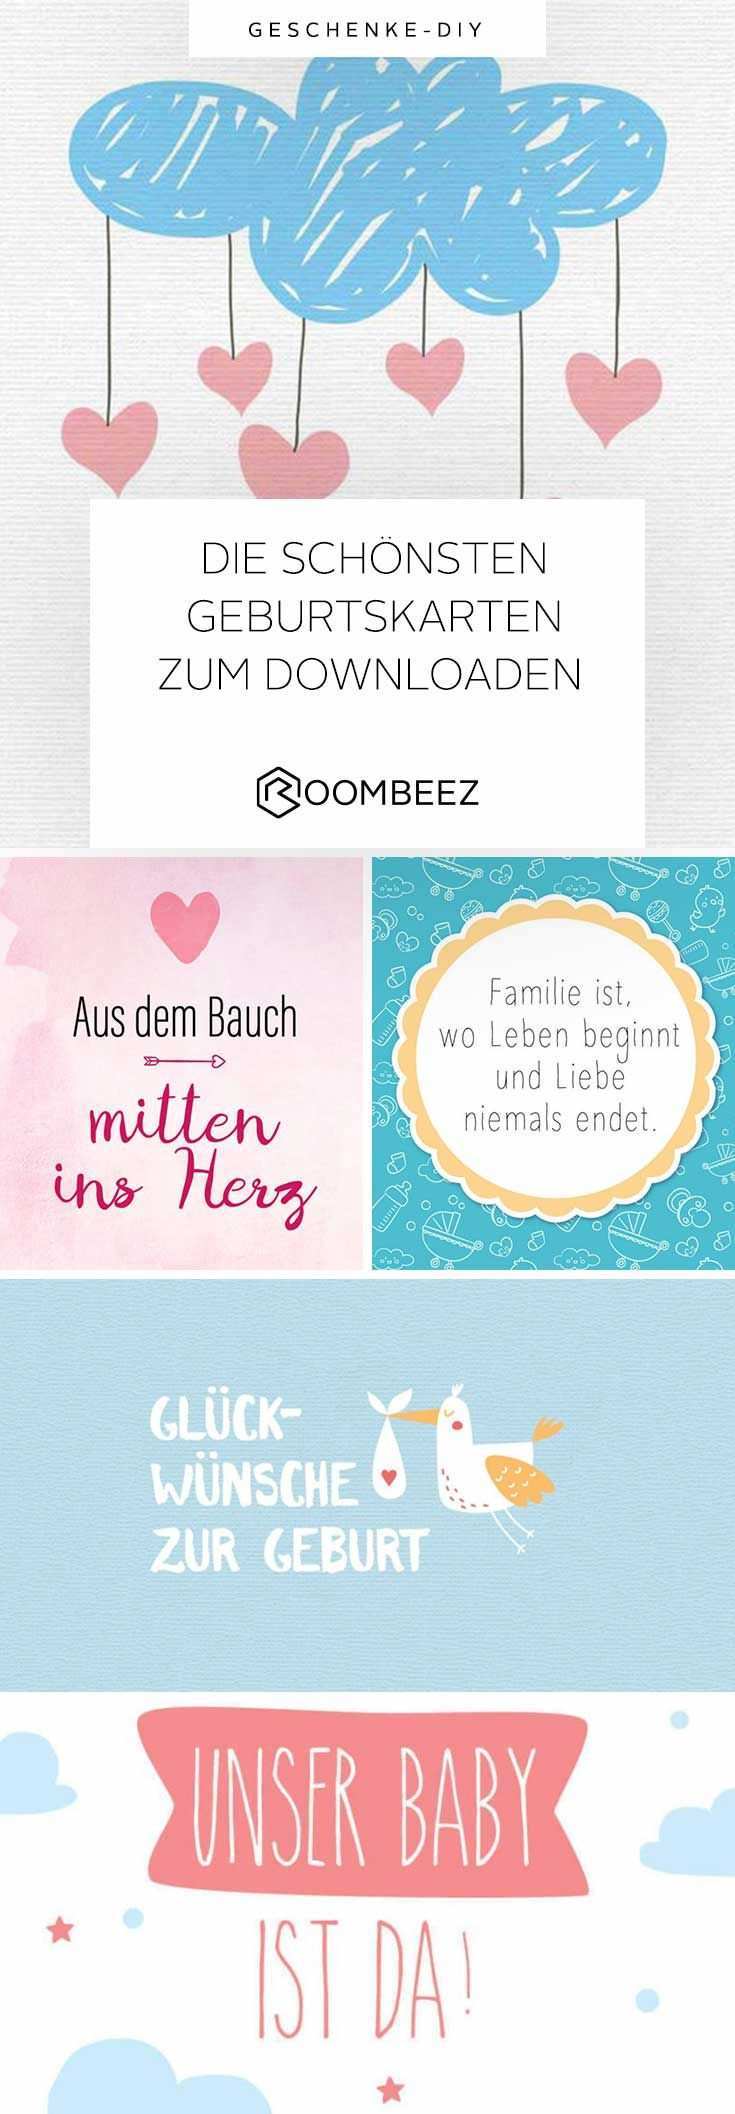 Gluckwunsche Zur Geburt 20 Kostenlose Babykarten Otto Gluckwunschkarte Geburt Geburtskarten Wunsche Zur Geburt